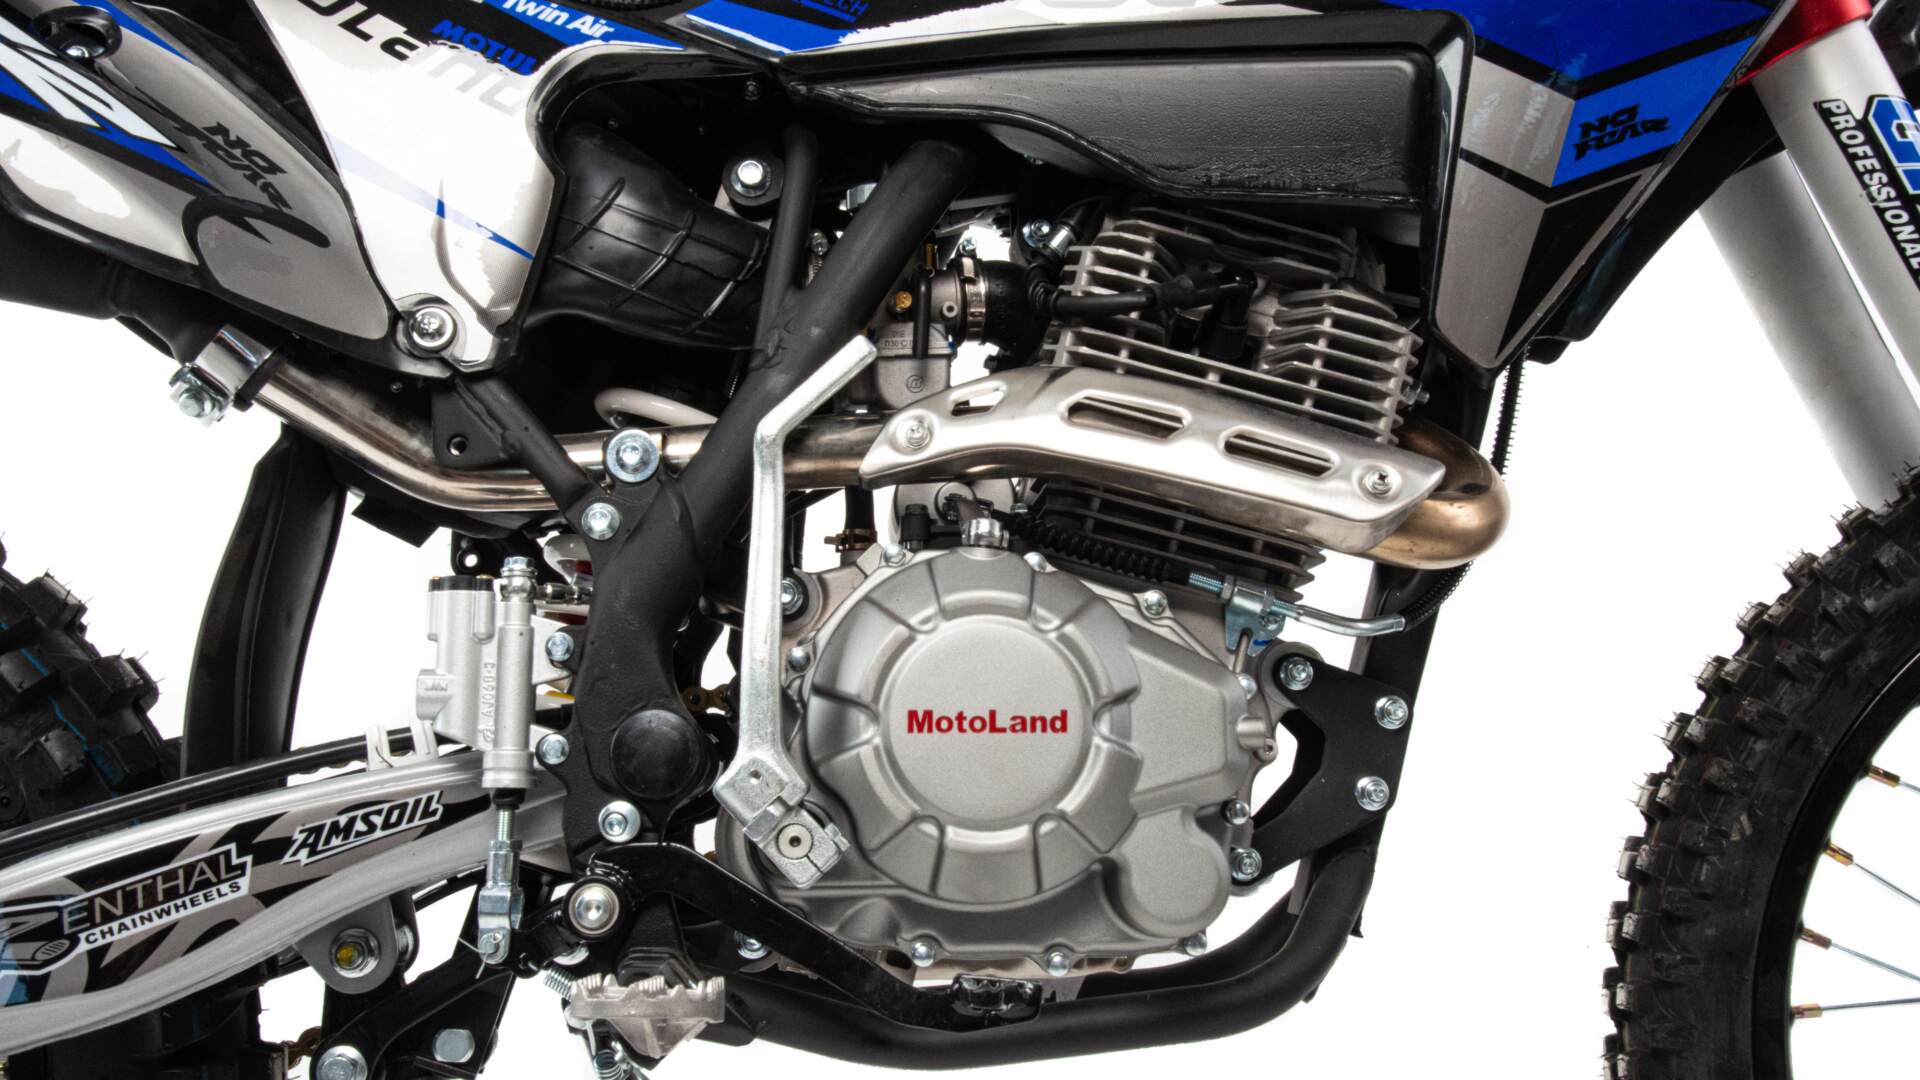 00000015360. Мотоцикл Кросс Motoland XT 250 HS (172FMM) синий / 